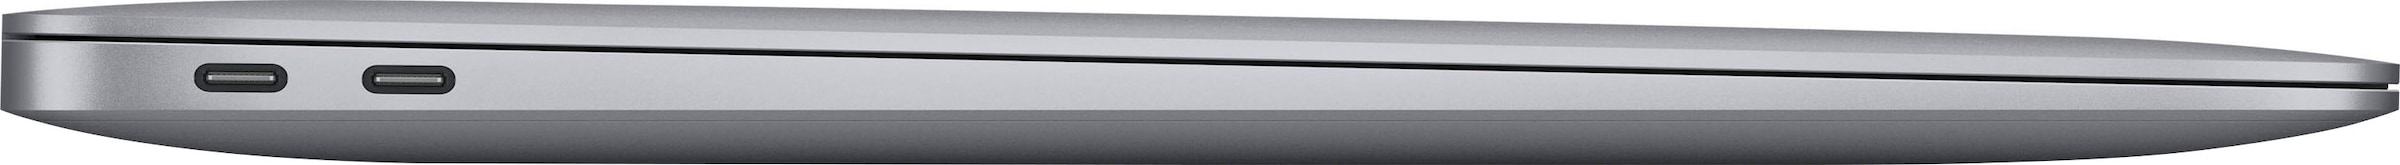 Apple Notebook »MacBook Air«, 33,78 256 13,3 M1, Apple, / cm, 8-core CPU GB Zoll, Rechnung kaufen auf M1, SSD